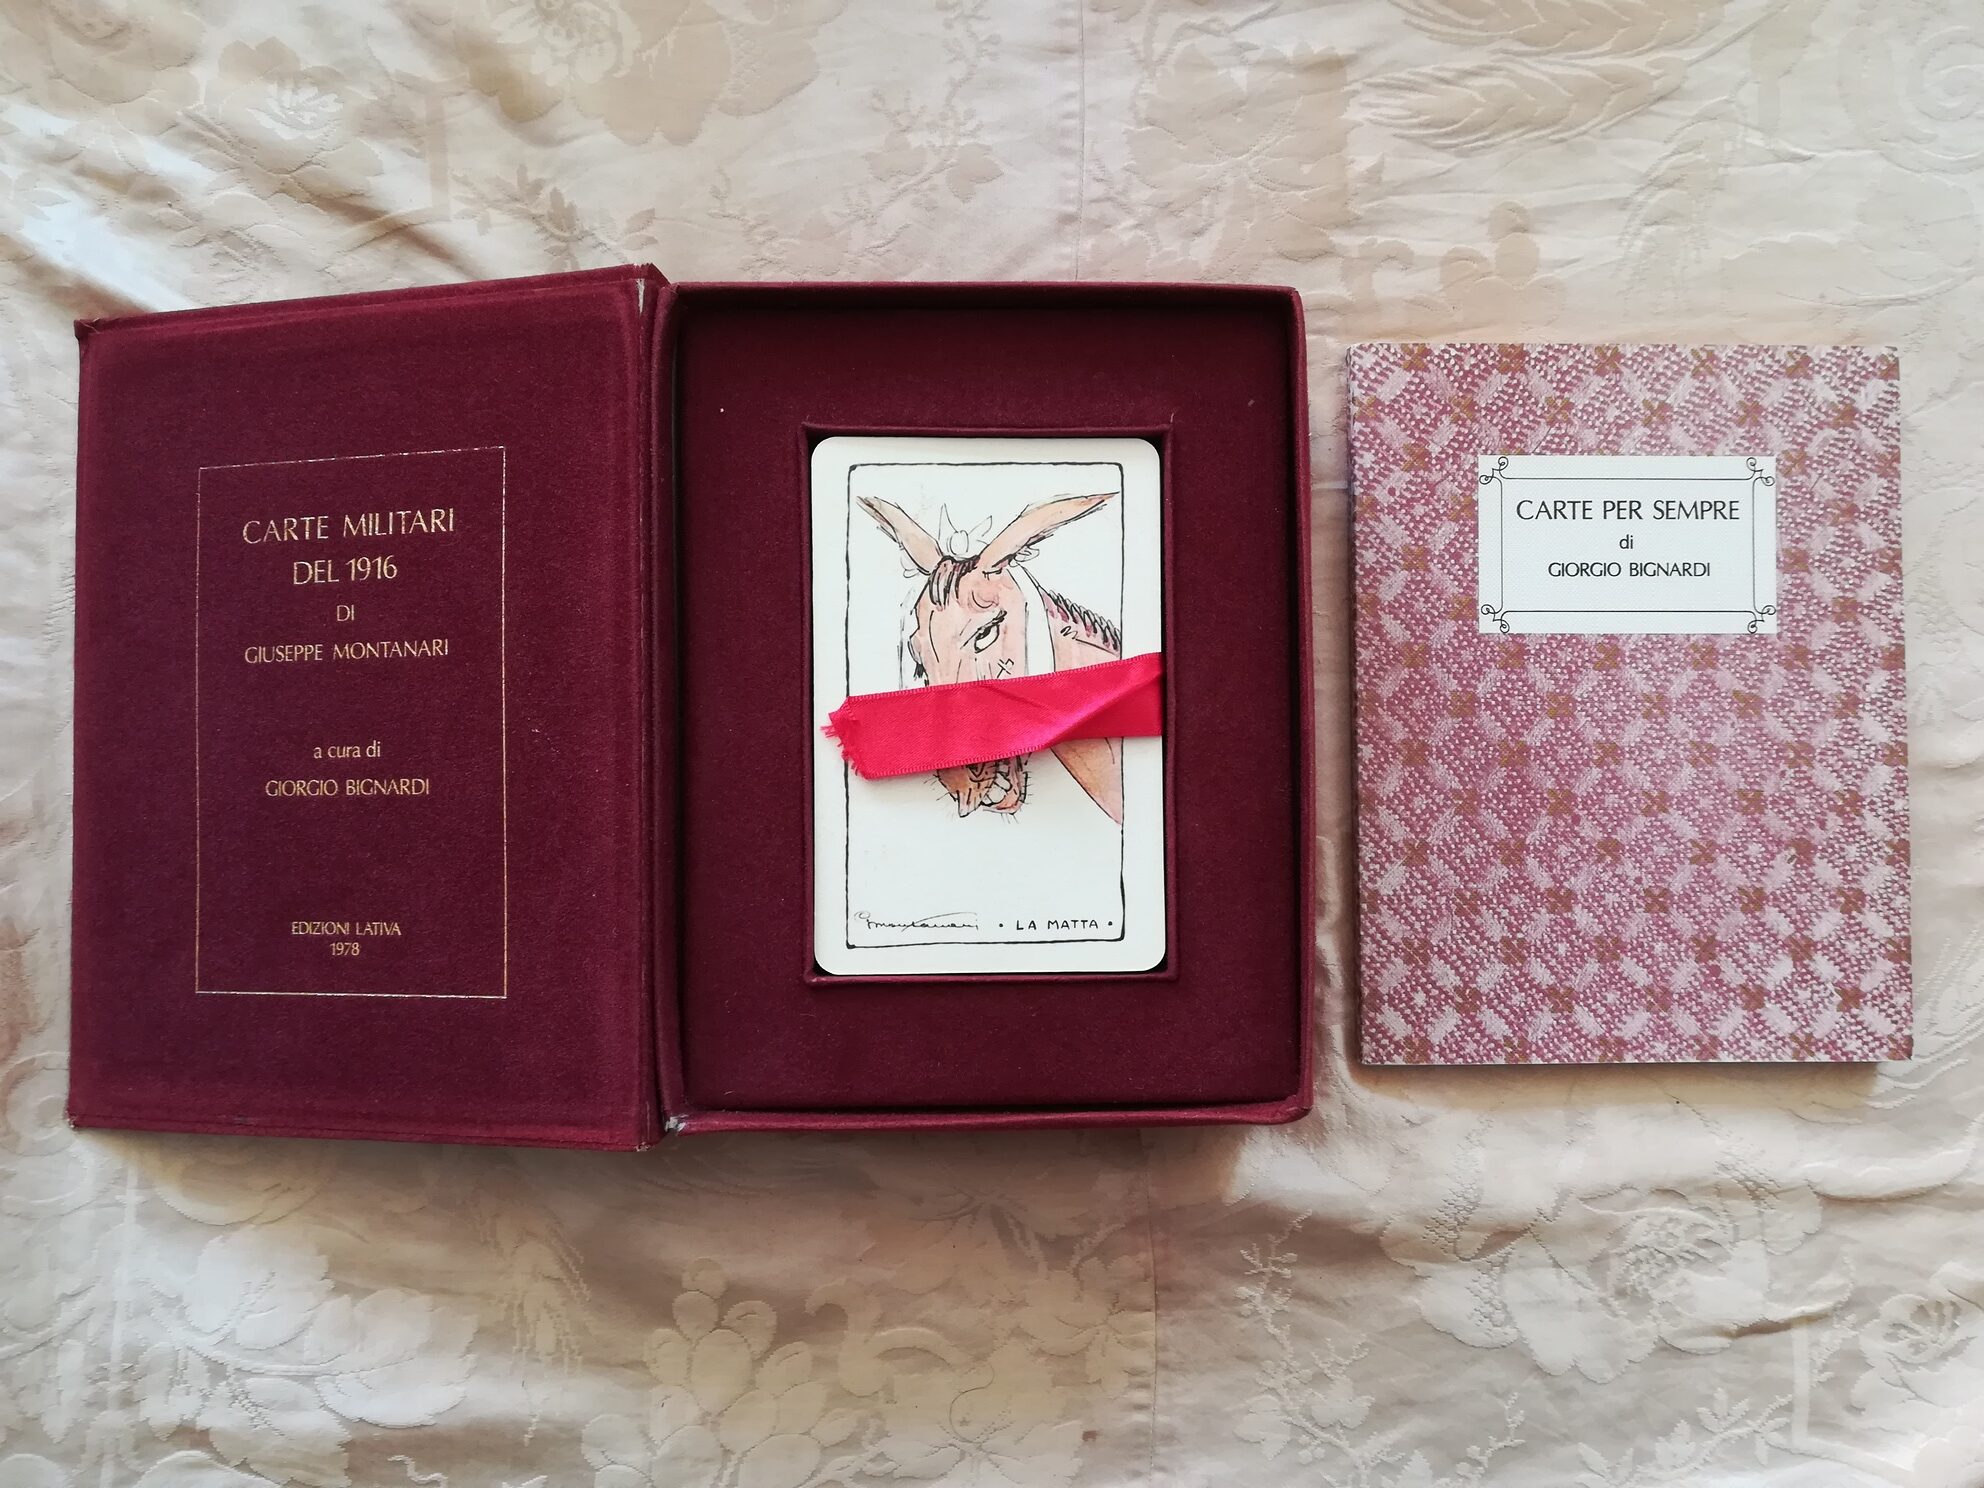 Tarocchi Mazzo di Carte: “Oracolo degli Angeli” – Libreria Antiquaria Zali  Elia – Chiavari